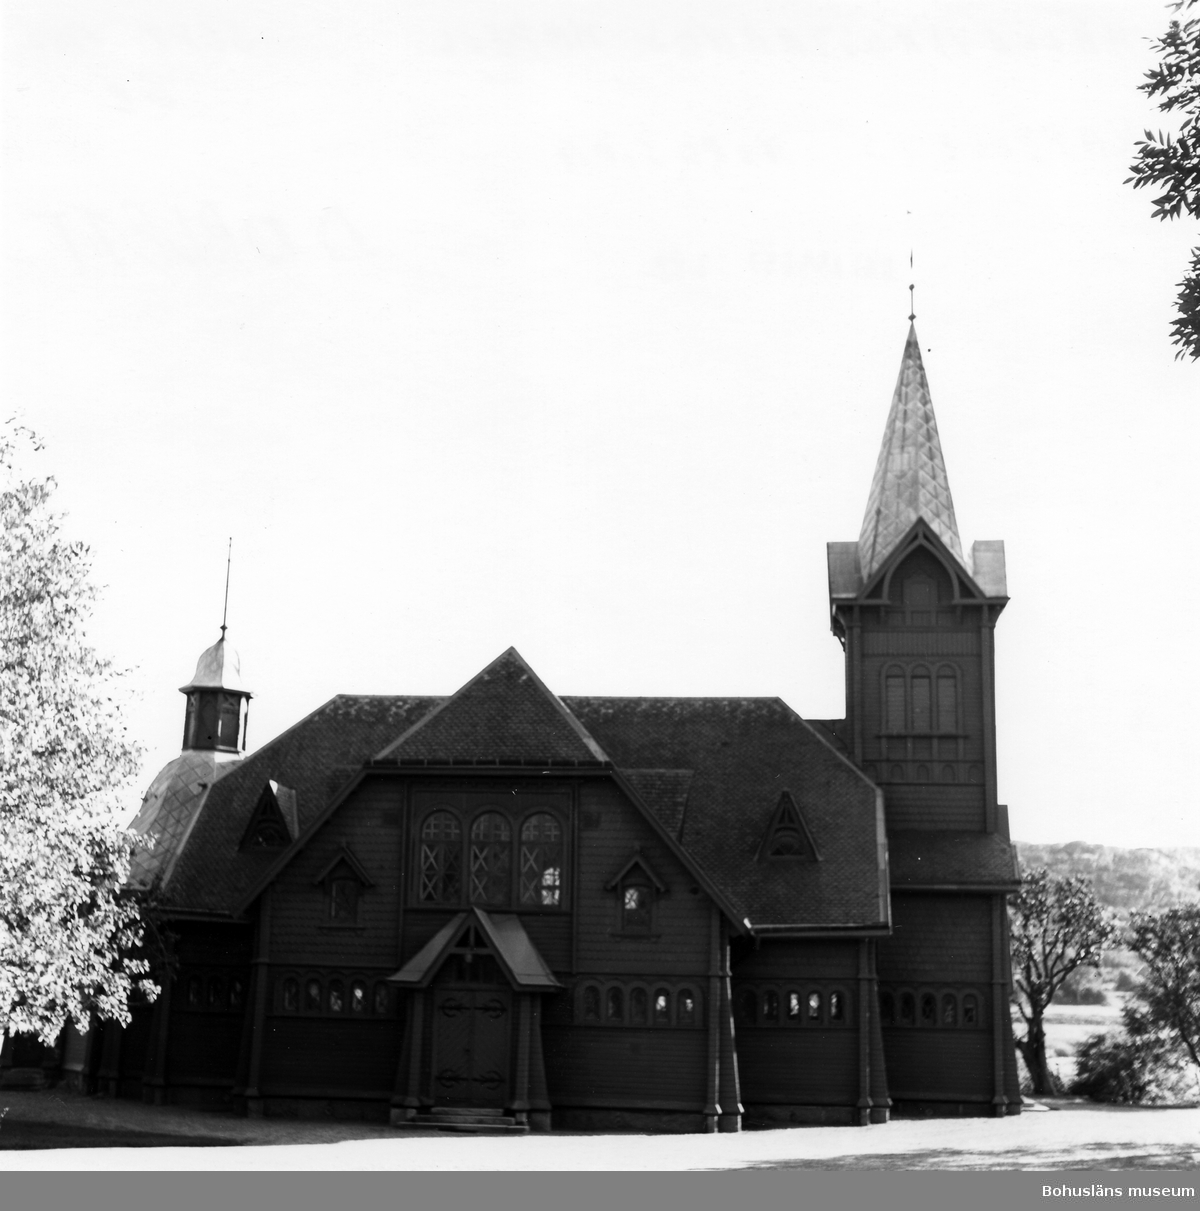 Text till bilden: "Hälleviksstrand kapell. Kapellets nordsida".
